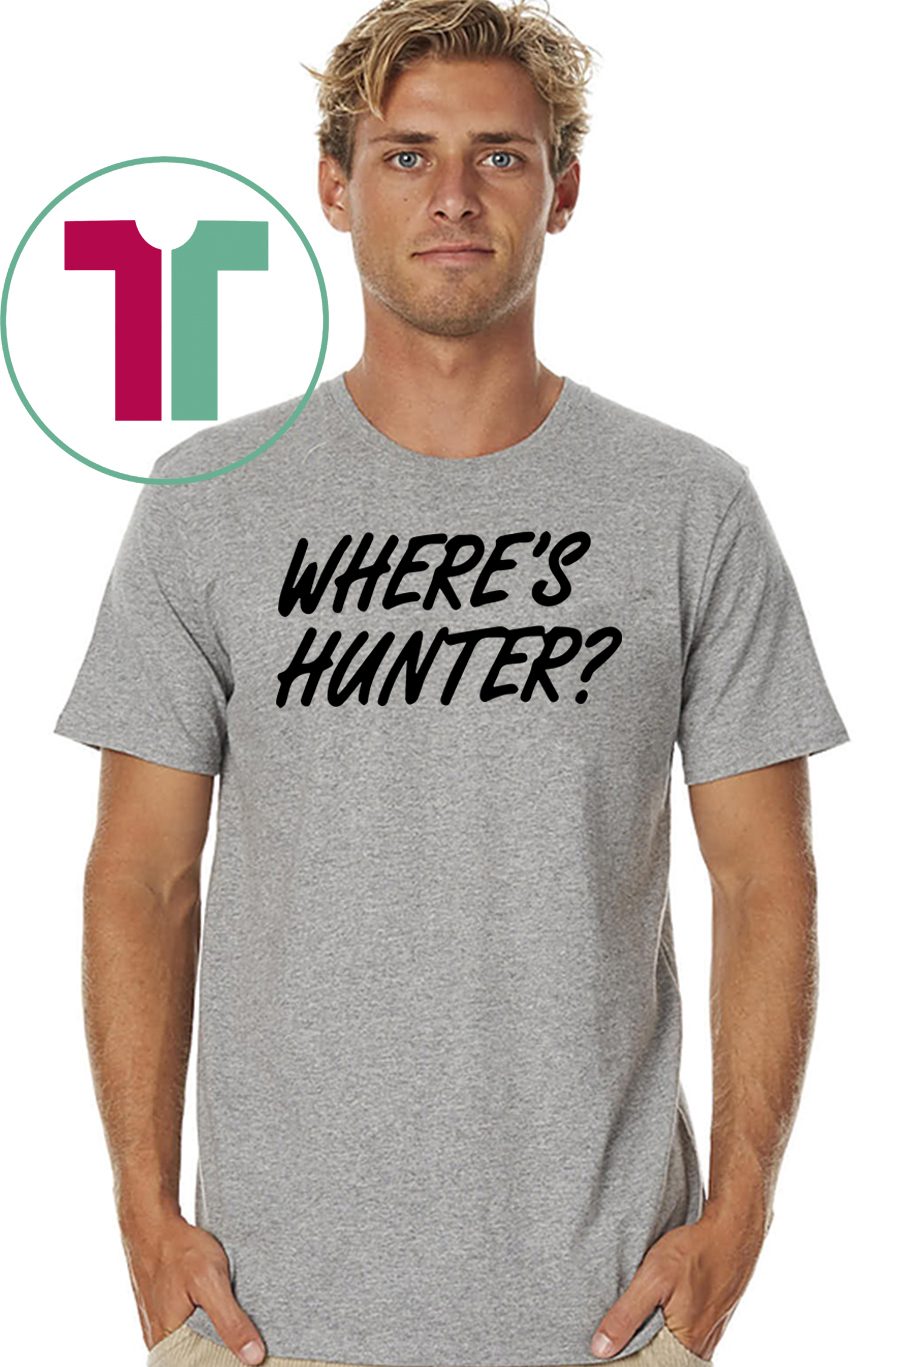 Let's do another t-shirt Where’s Hunter Biden T-Shirt - OrderQuilt.com